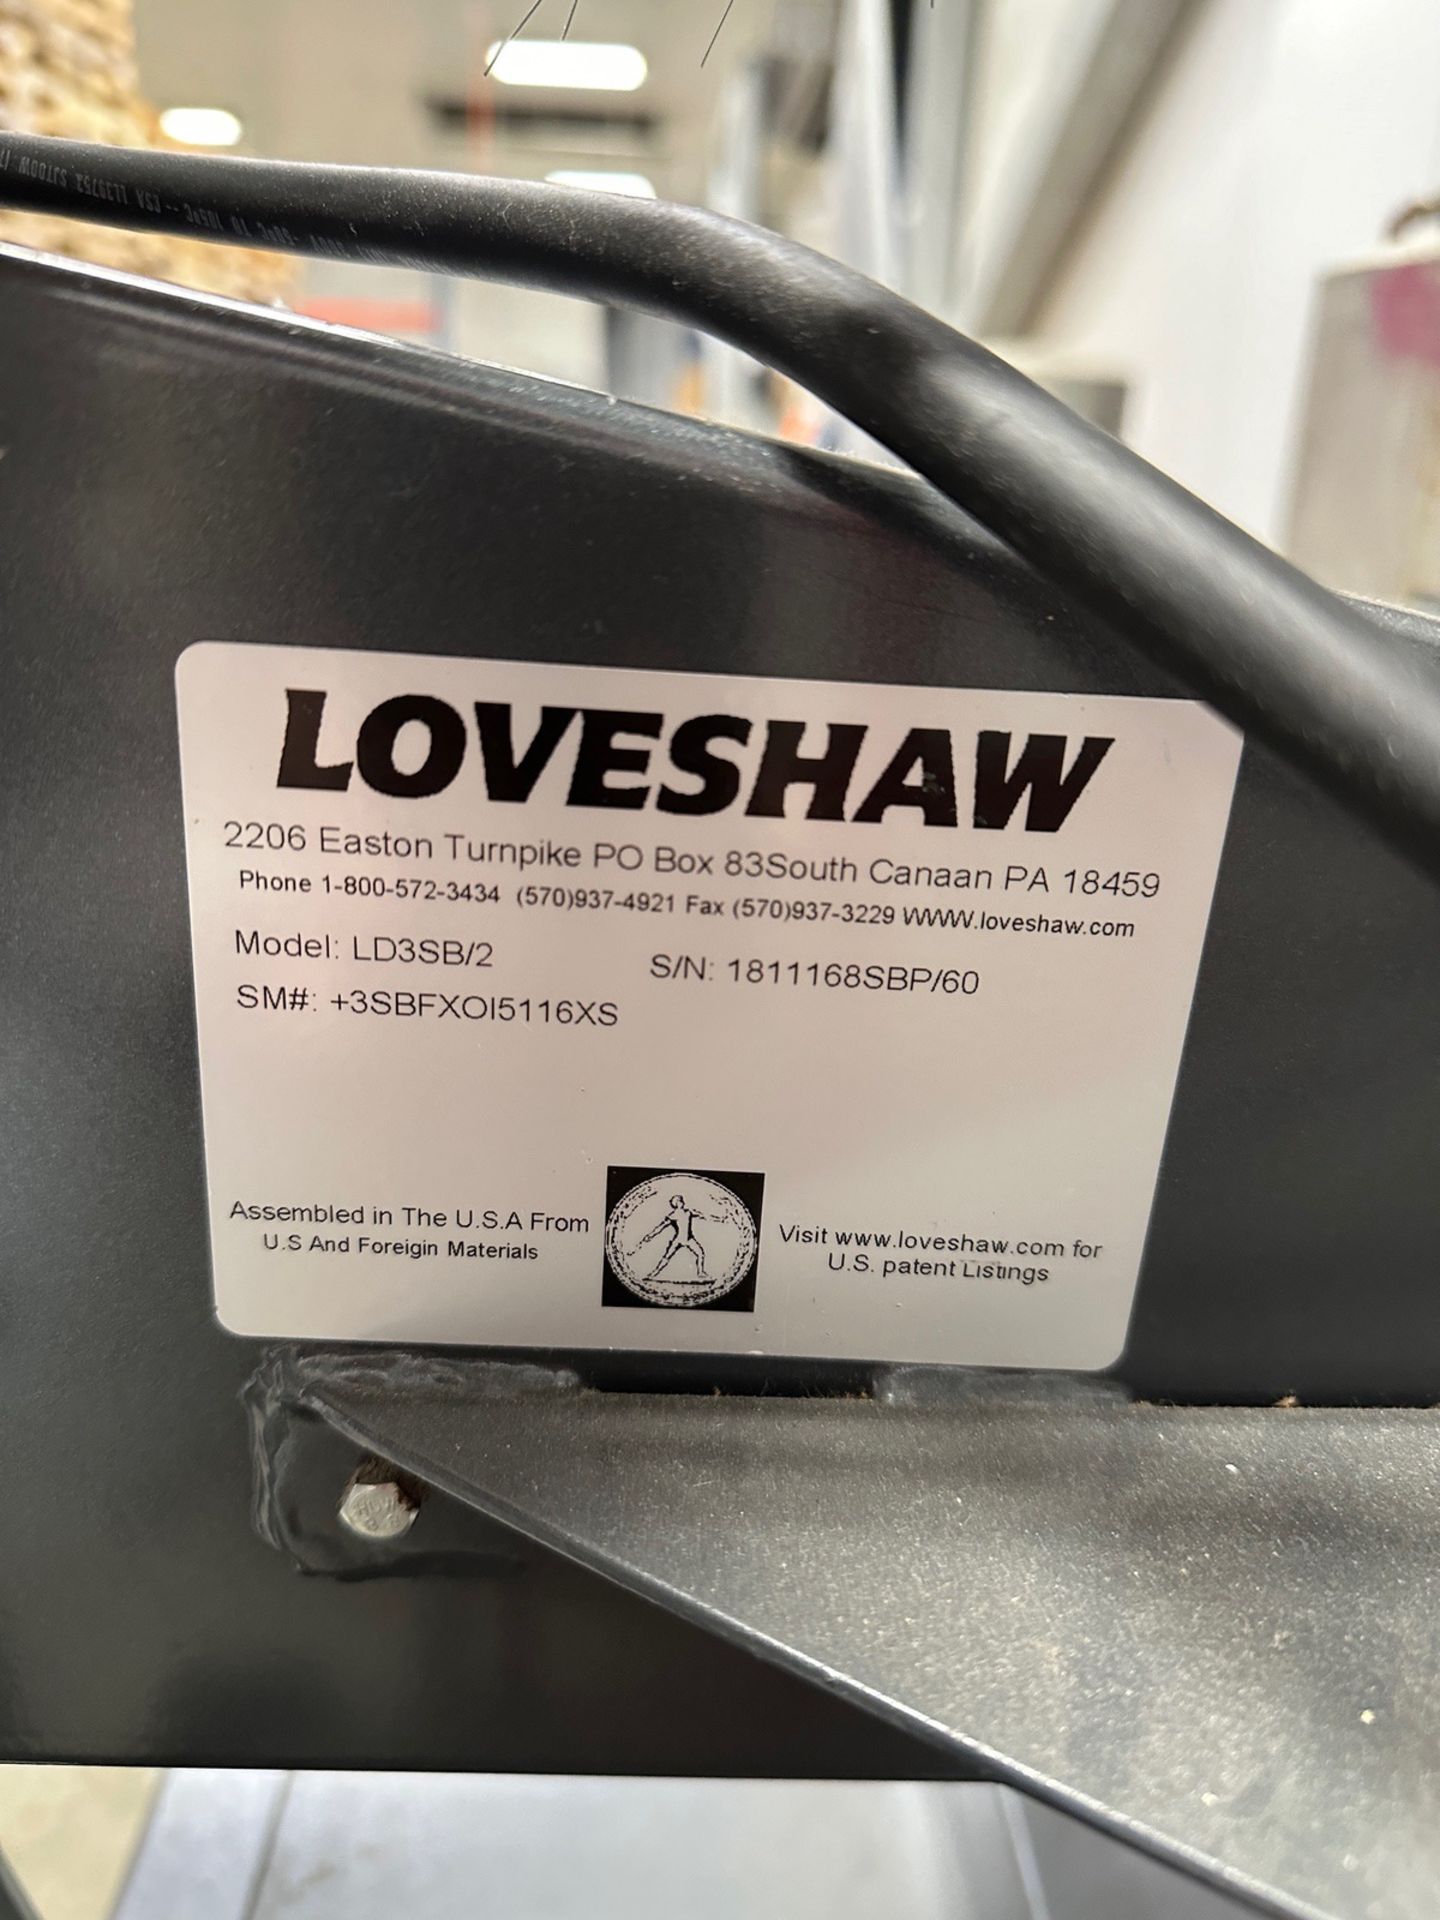 Loveshaw Little David Case Sealer - Model LD3SB/2, S/N 1811168SBP/60 | Rig Fee $175 - Image 4 of 4